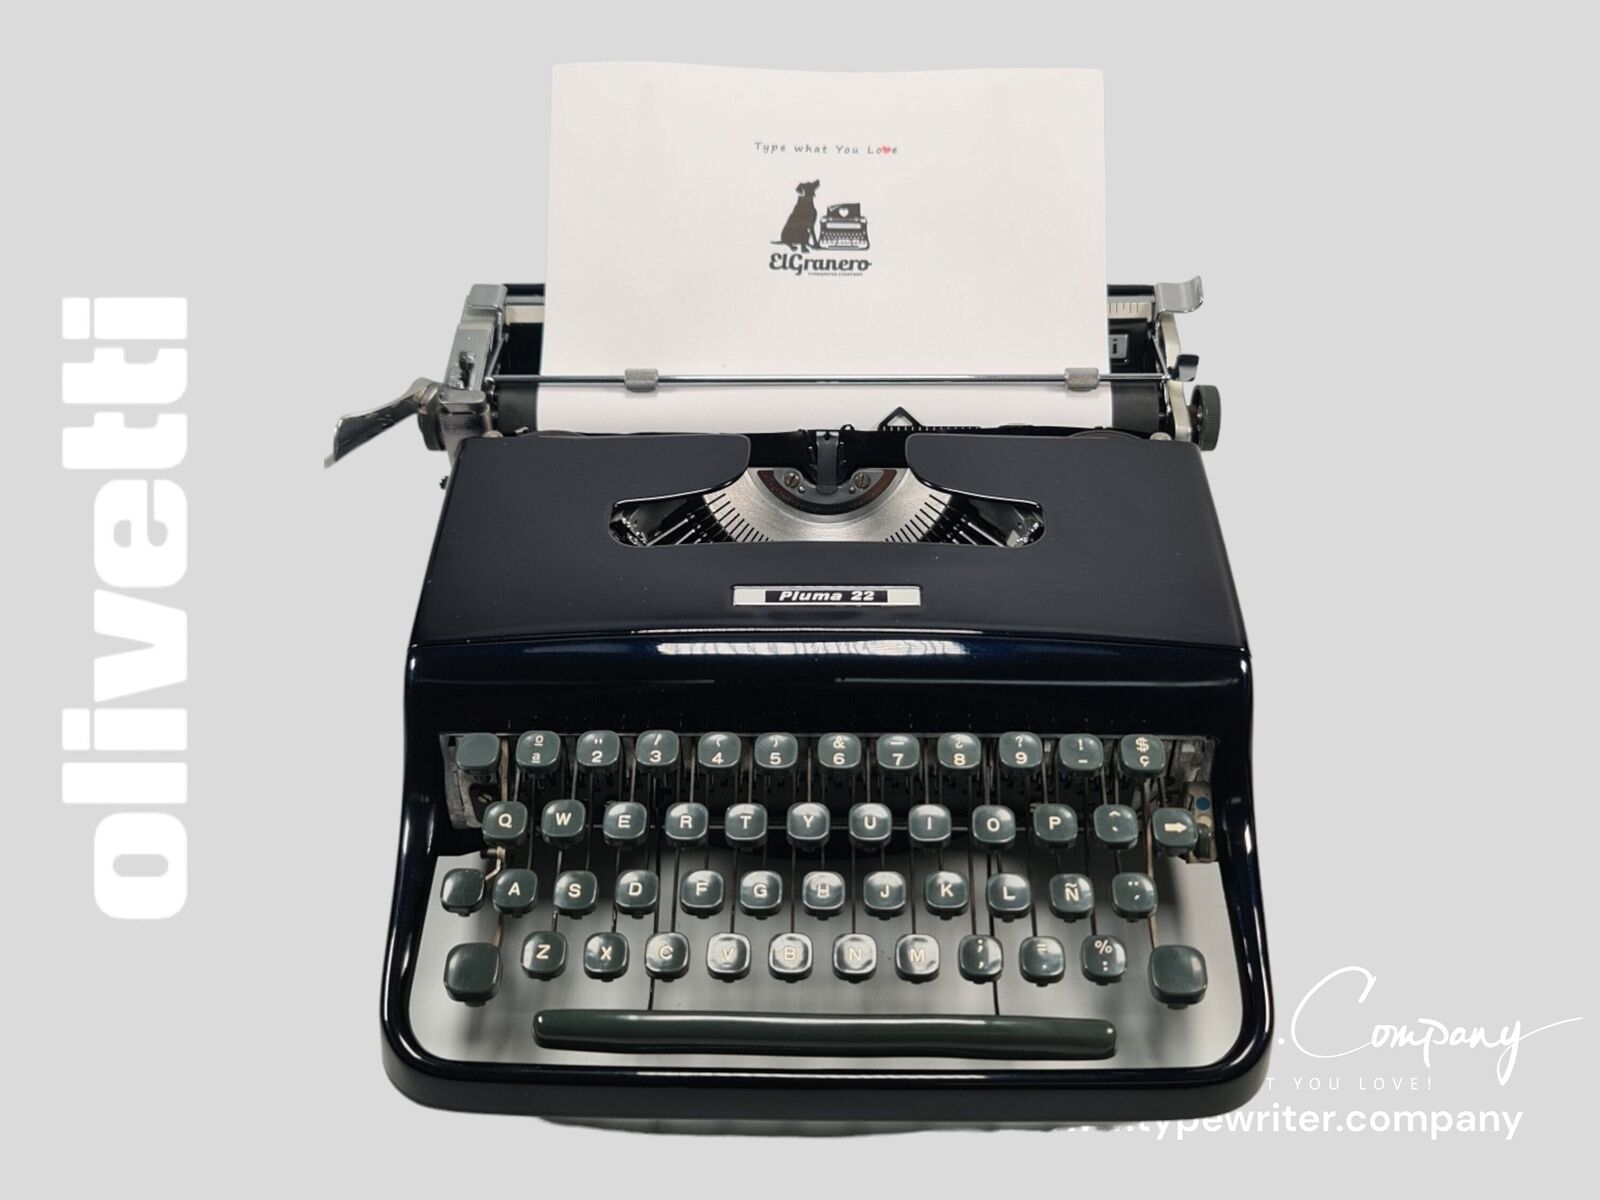 SALE - Limited Edition Olivetti Pluma 22 Navy Blue Typewriter, Vintage,